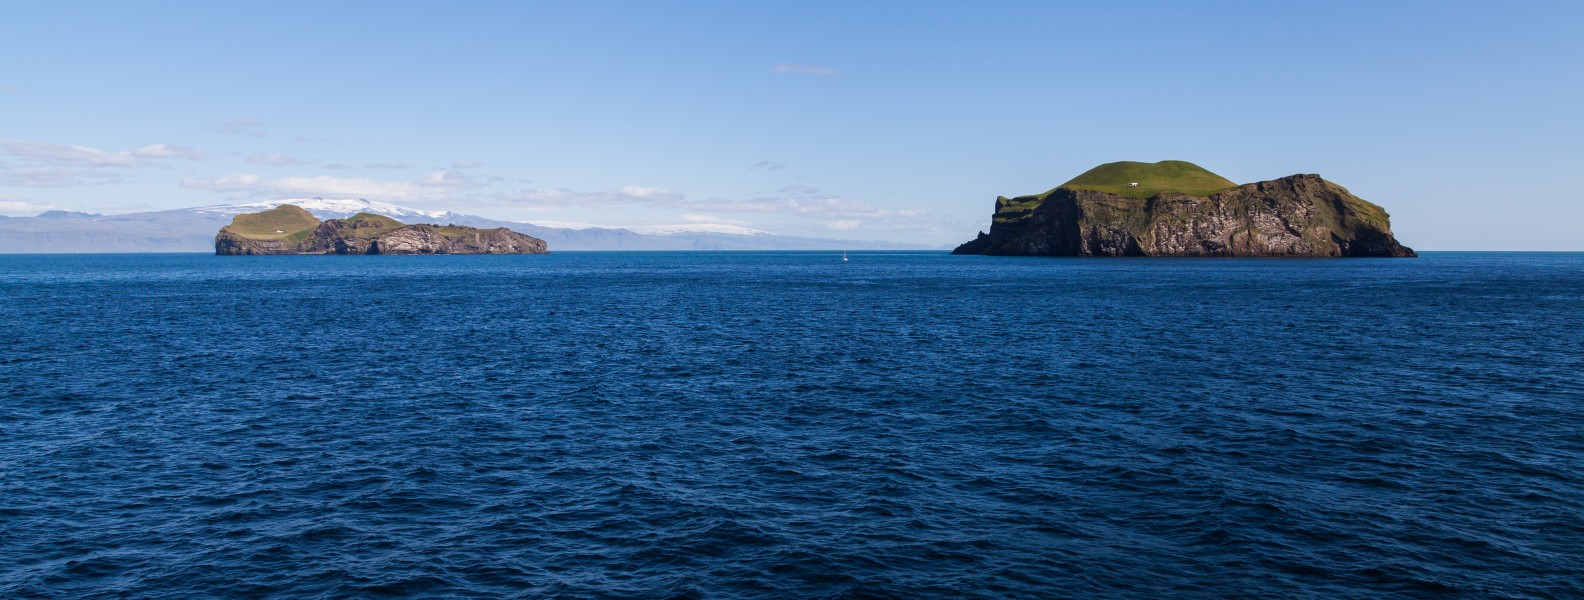 Islas Elliðaey y Bjarnarey, Islas Vestman, Suðurland, Islandia, 2014-08-17, DD 102